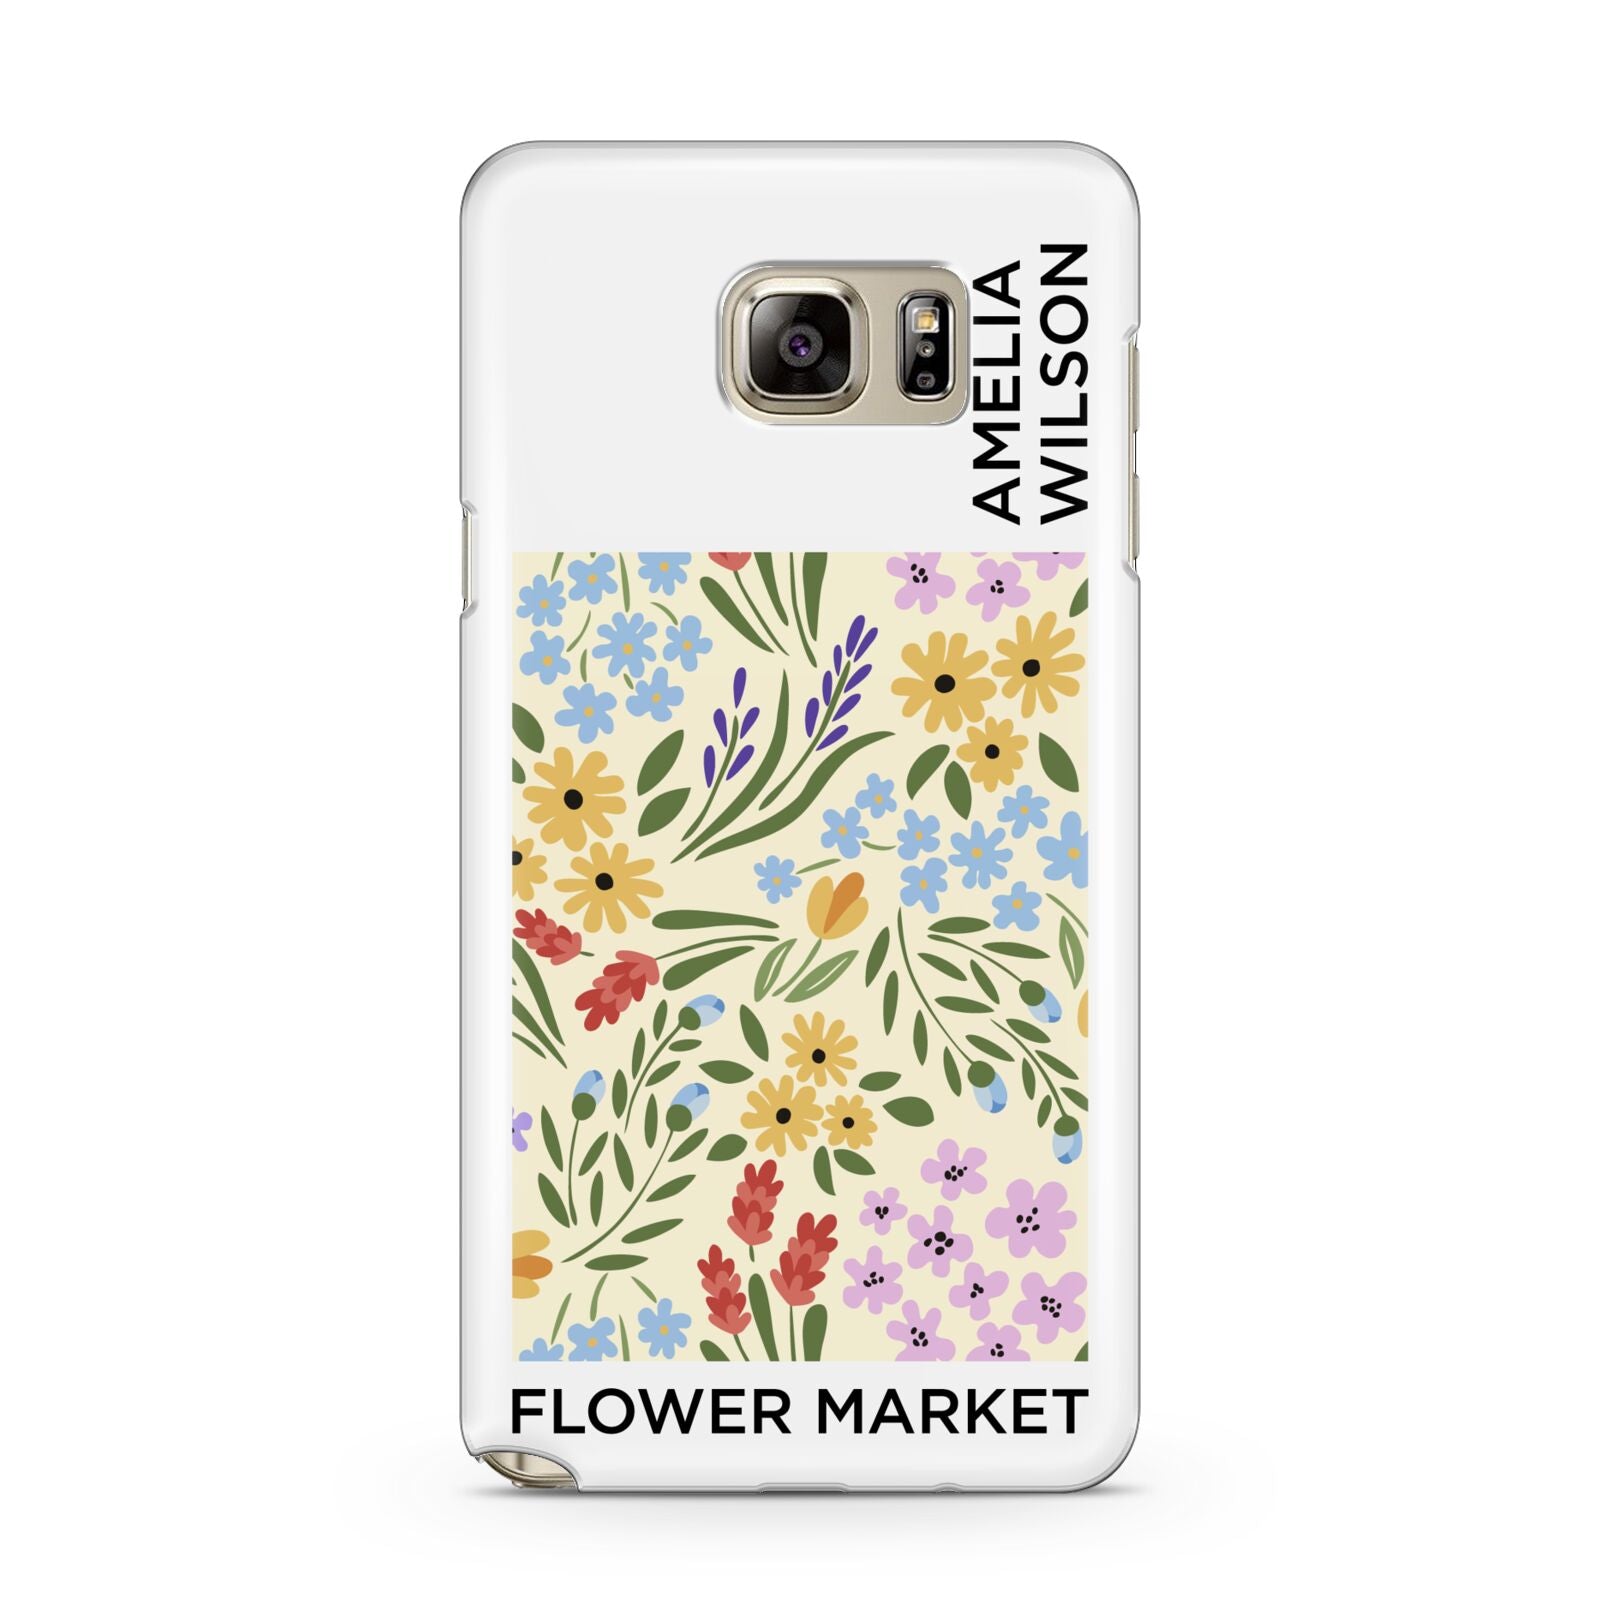 Paris Flower Market Samsung Galaxy Note 5 Case